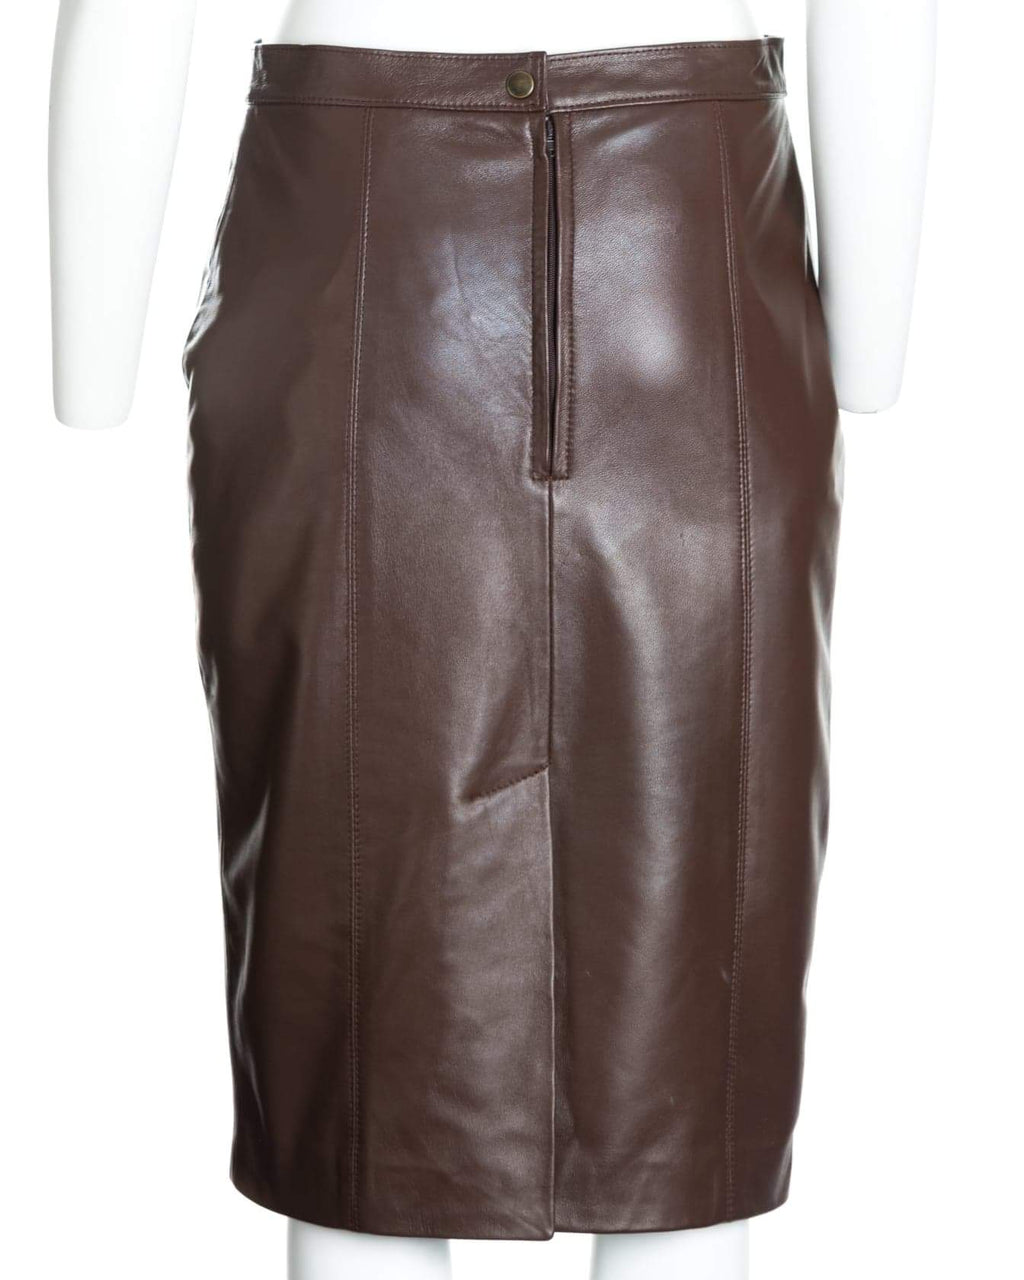 Ladies 17" Leather Skirt